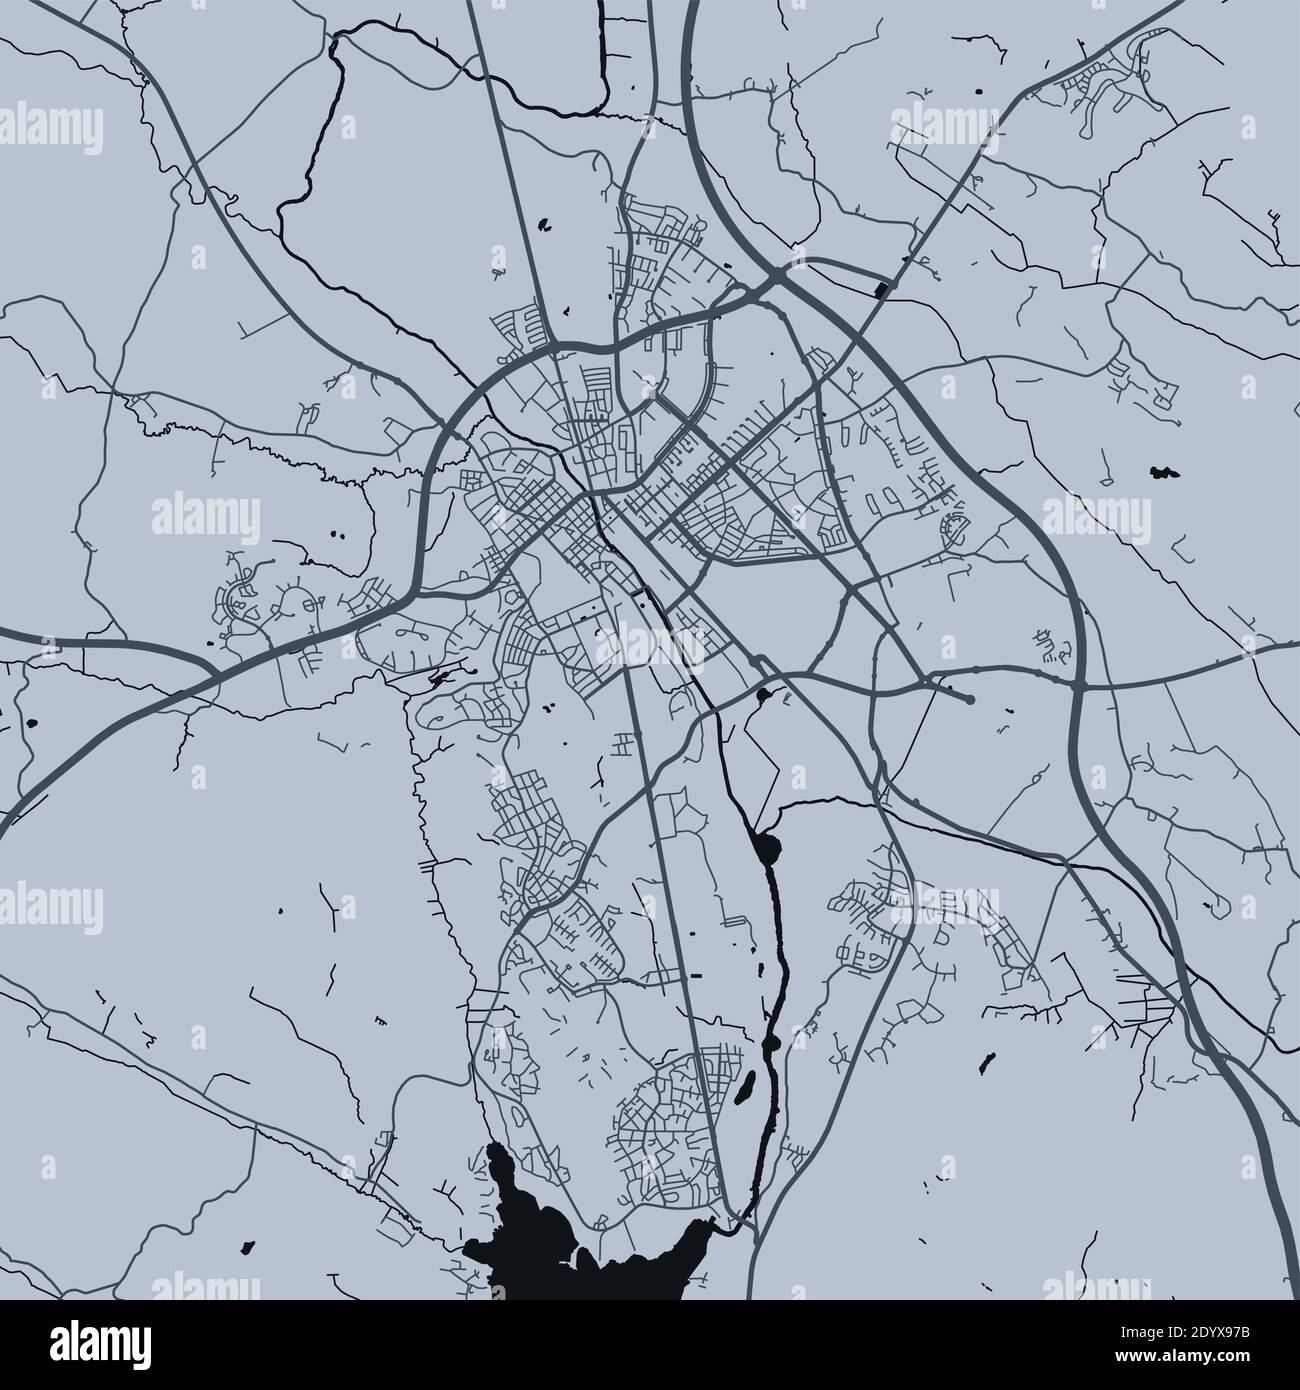 Mappa dettagliata dell'area amministrativa della città di Uppsala. Illustrazione vettoriale priva di royalty. Panorama cittadino. Mappa turistica grafica decorativa di Uppsala terrr Illustrazione Vettoriale